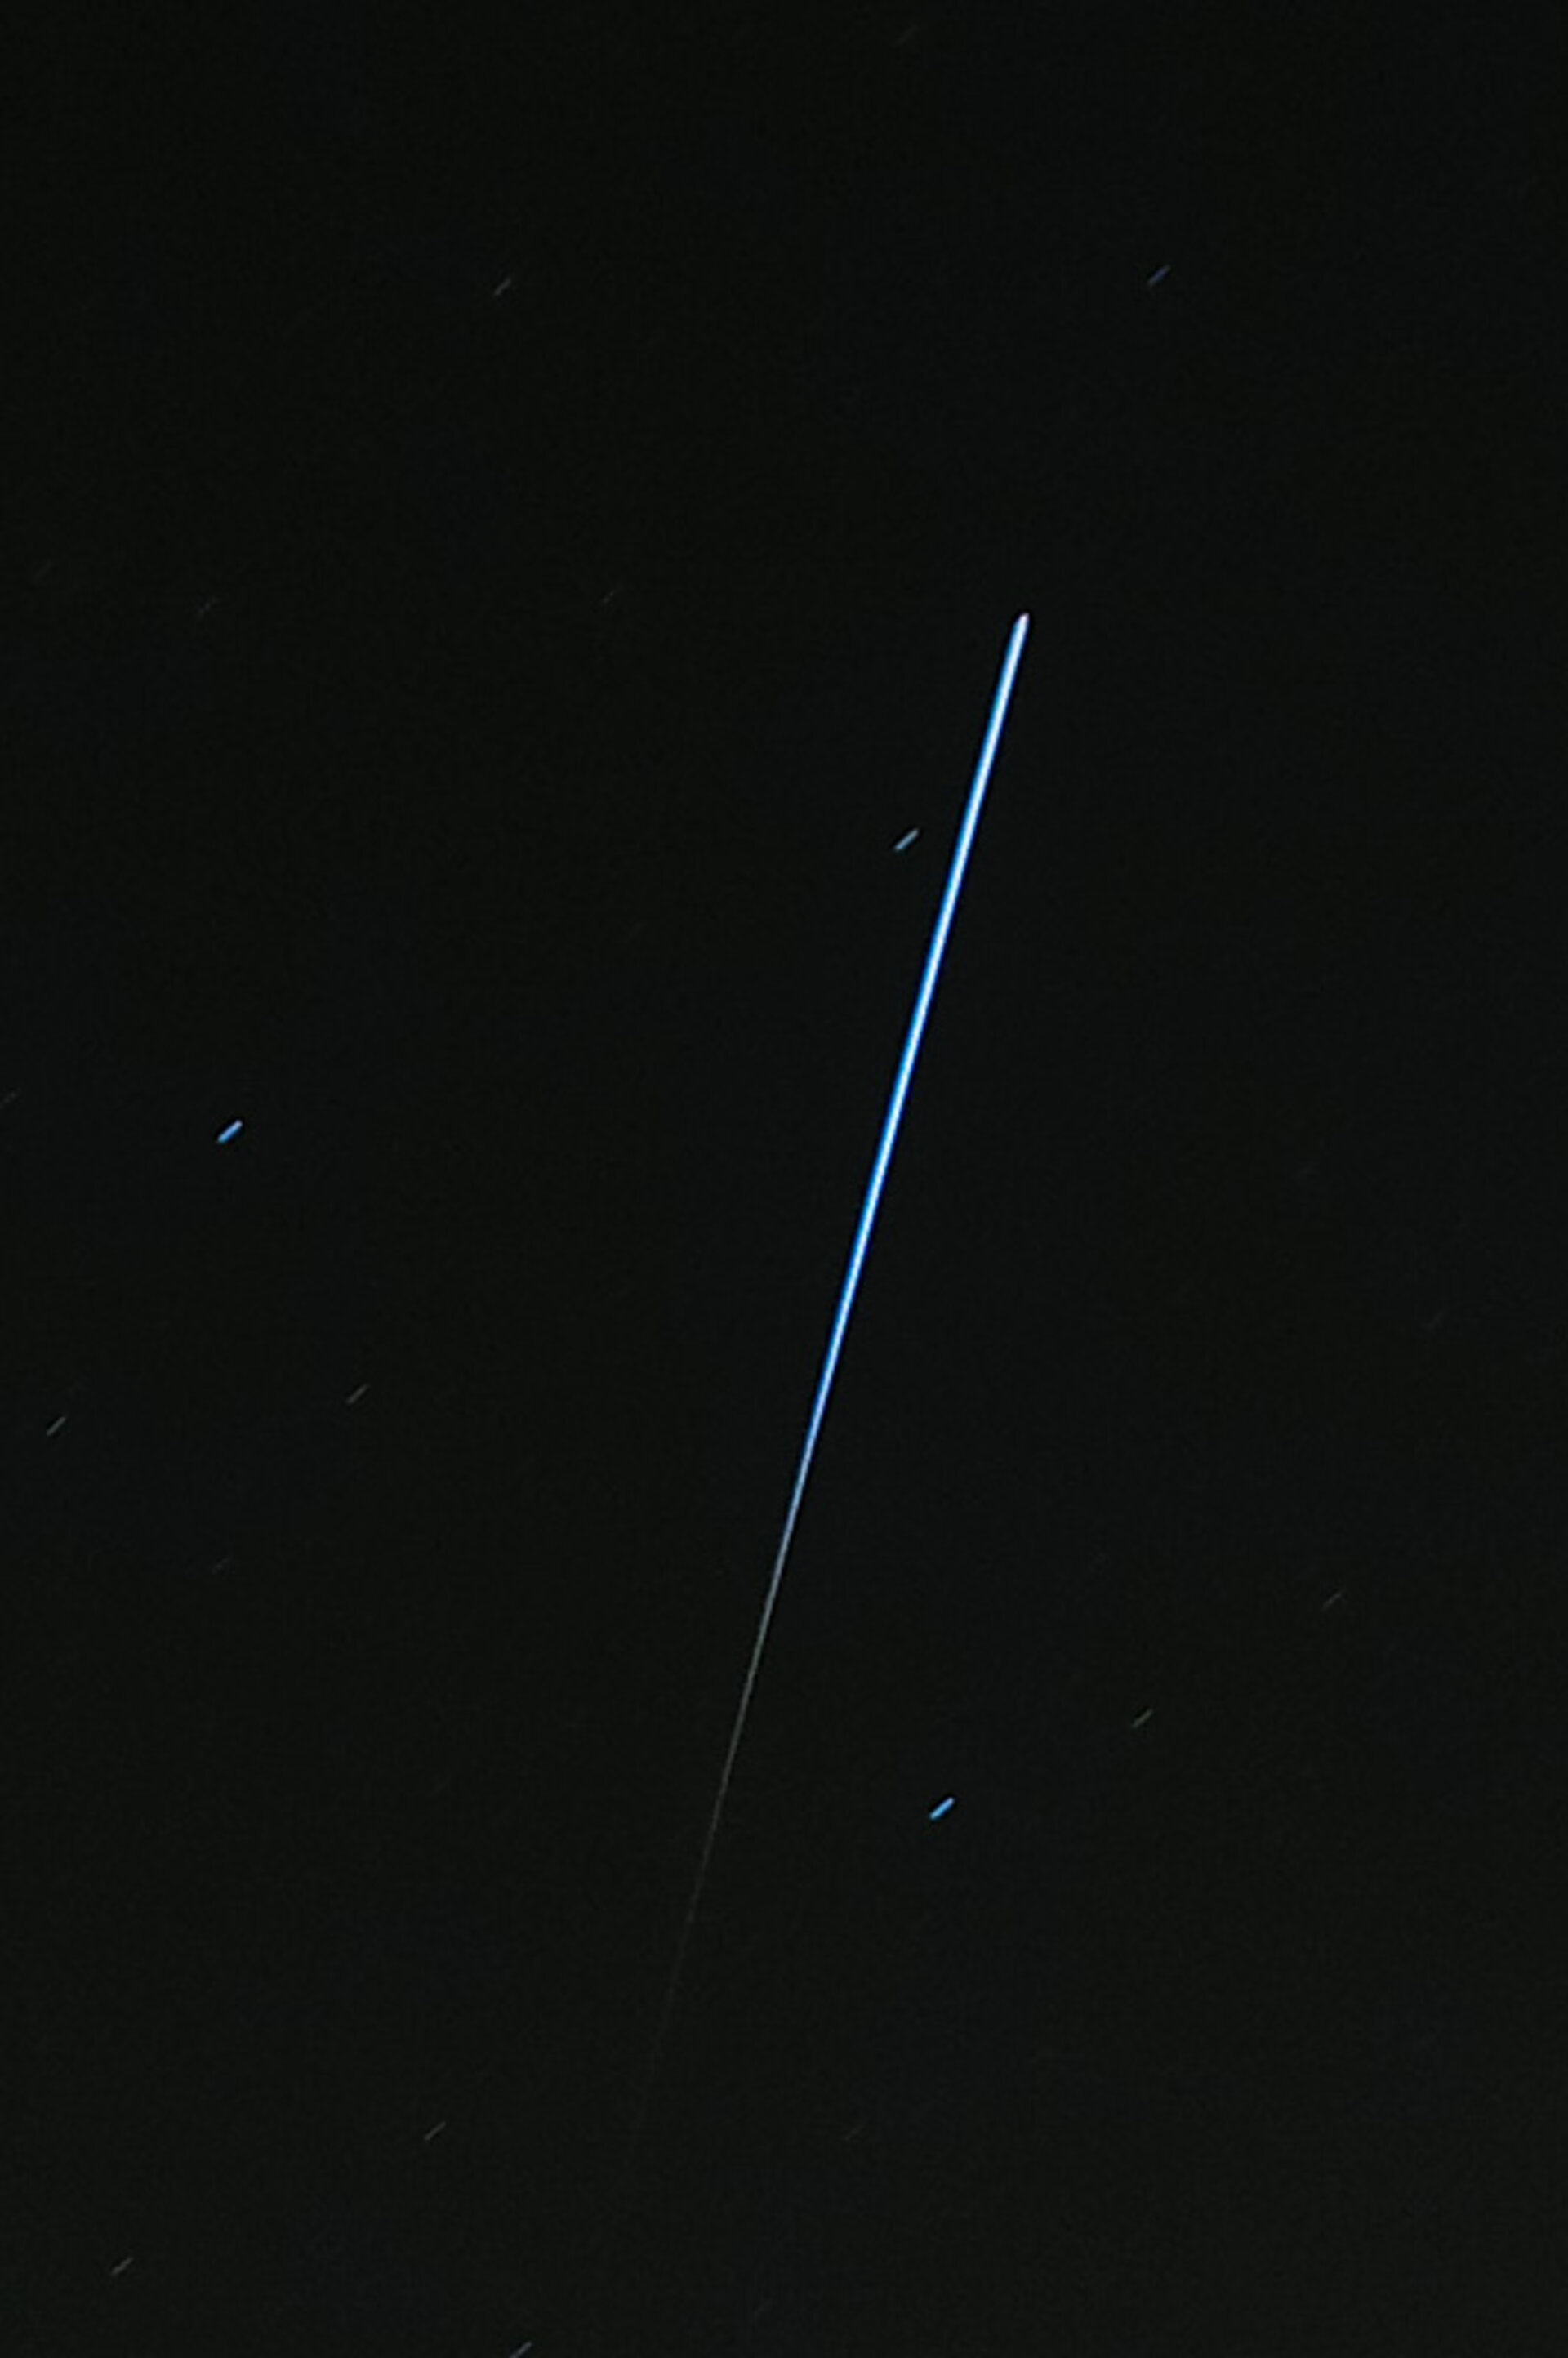 ISS vastgelegd boven ESTEC, om 19:18